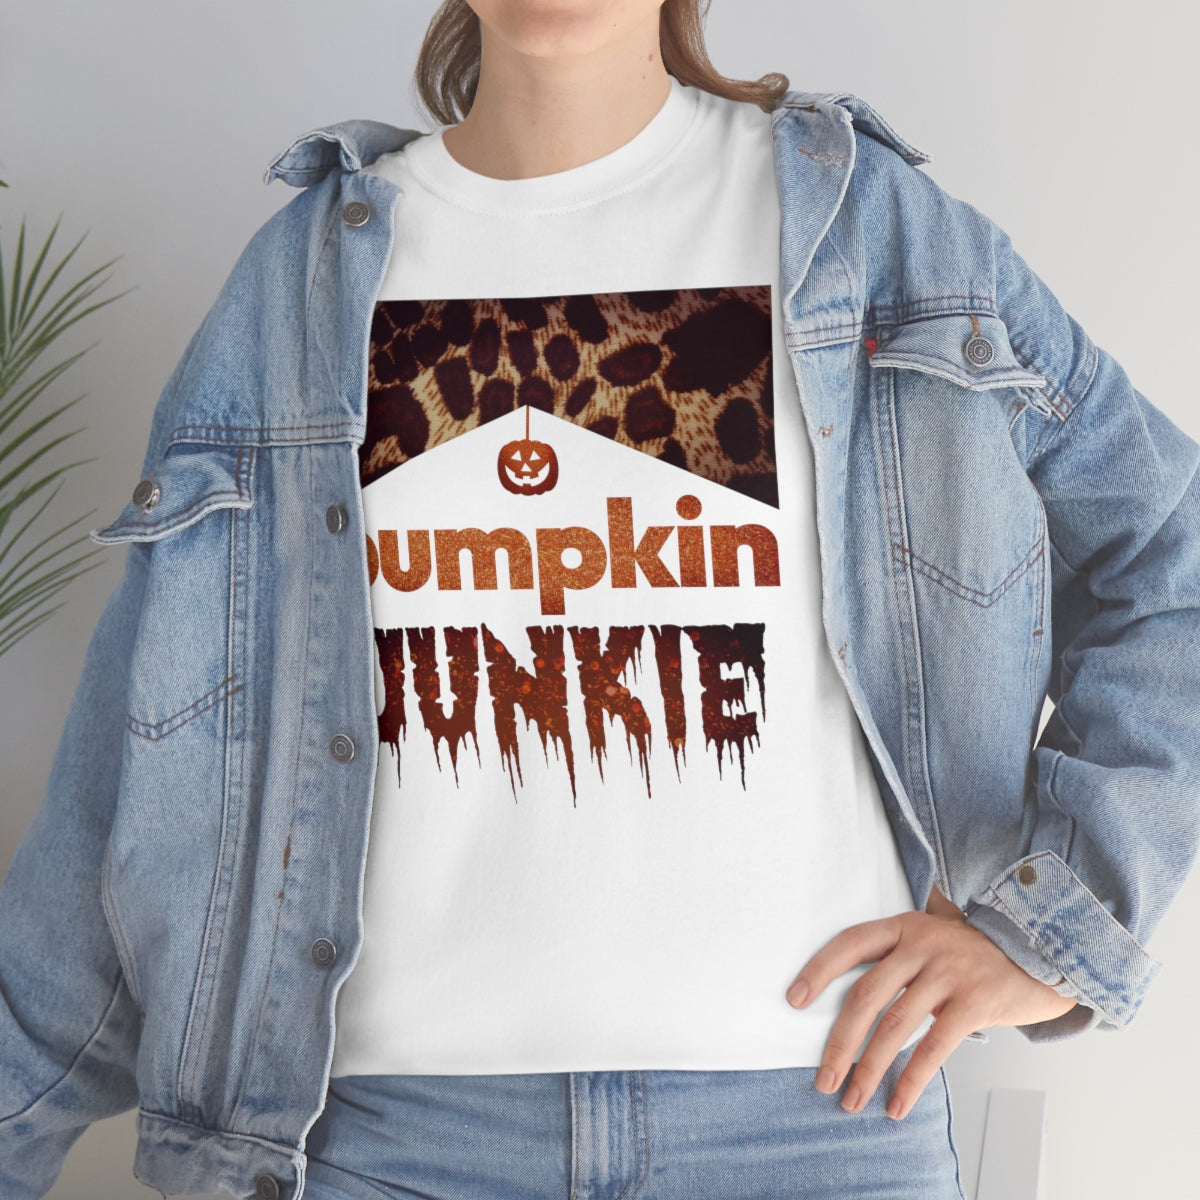 Pumpkin Junkie Tee